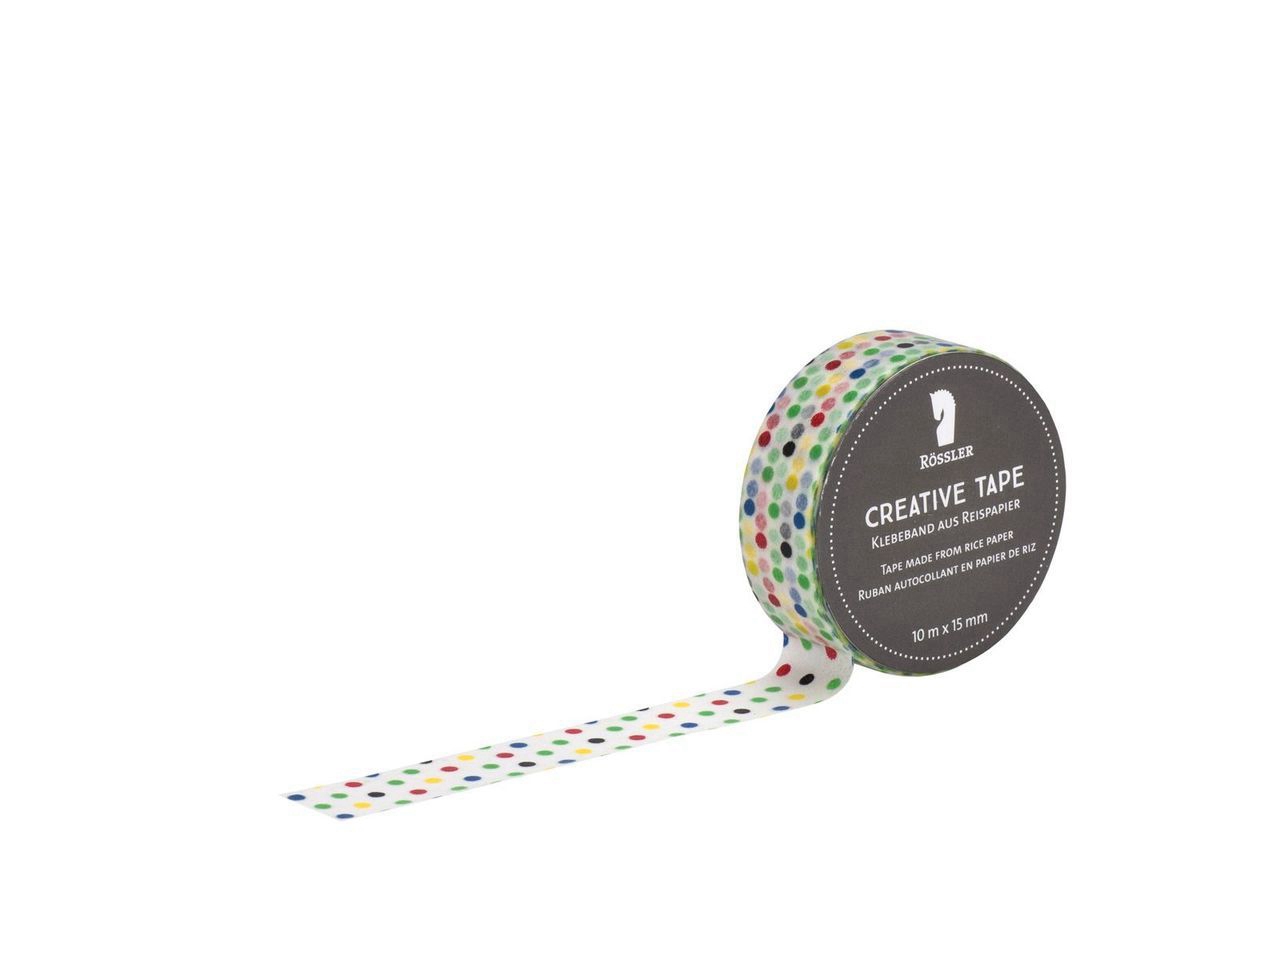 Creative Tape adesivo - Punti colorati su sfondo trasparente